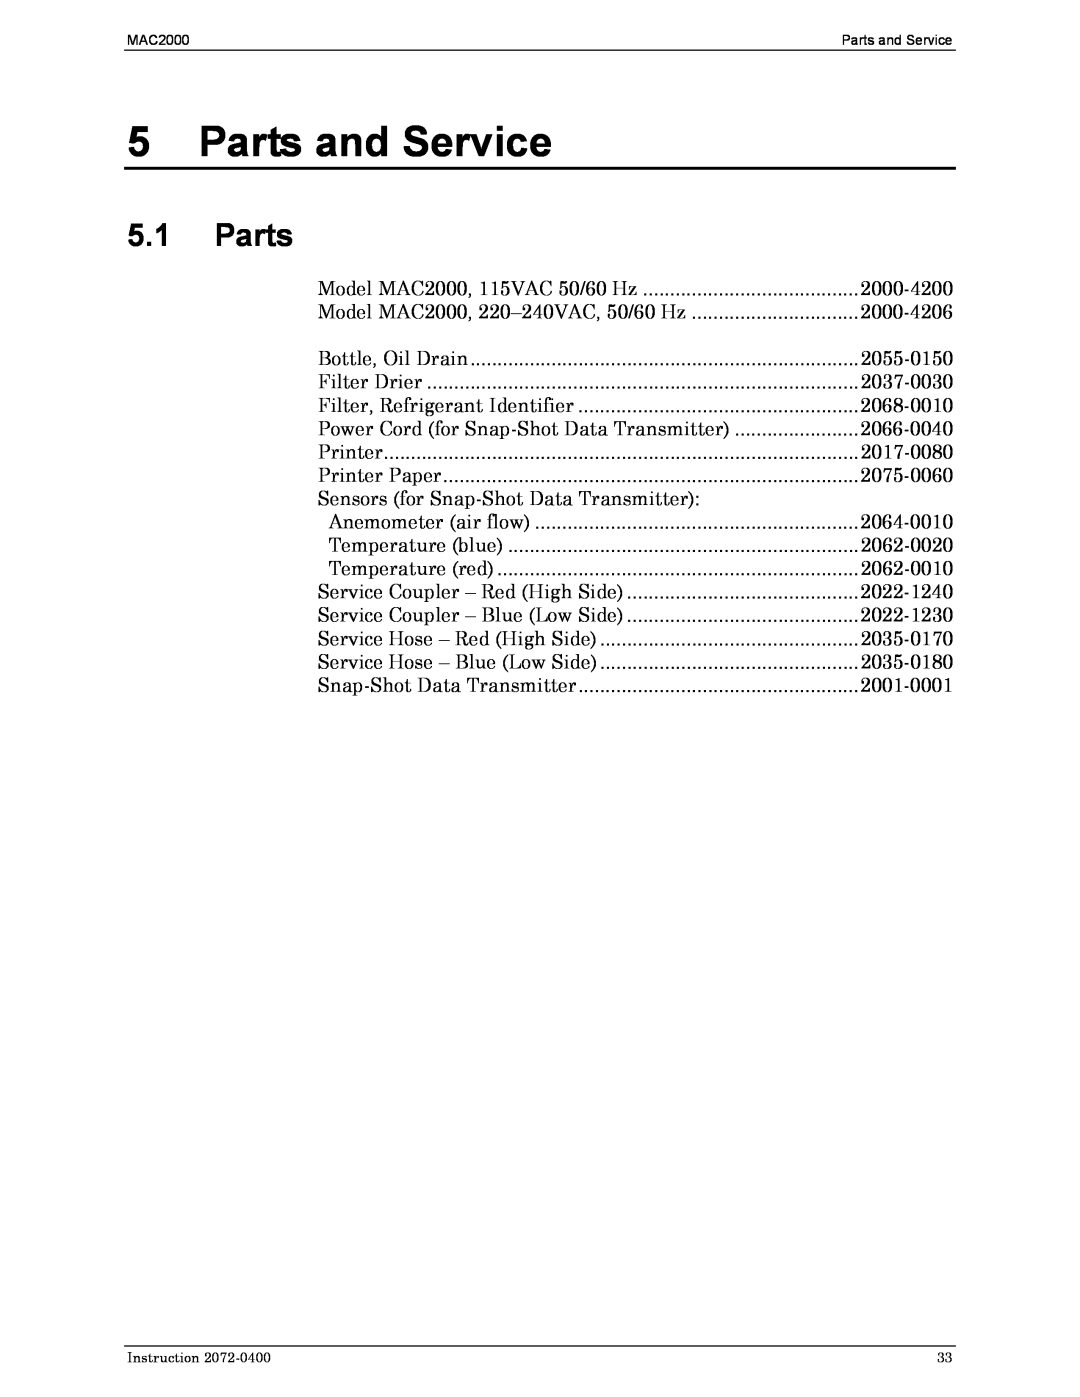 Bacharach 2072-0400 manual Parts and Service, 5.1Parts 